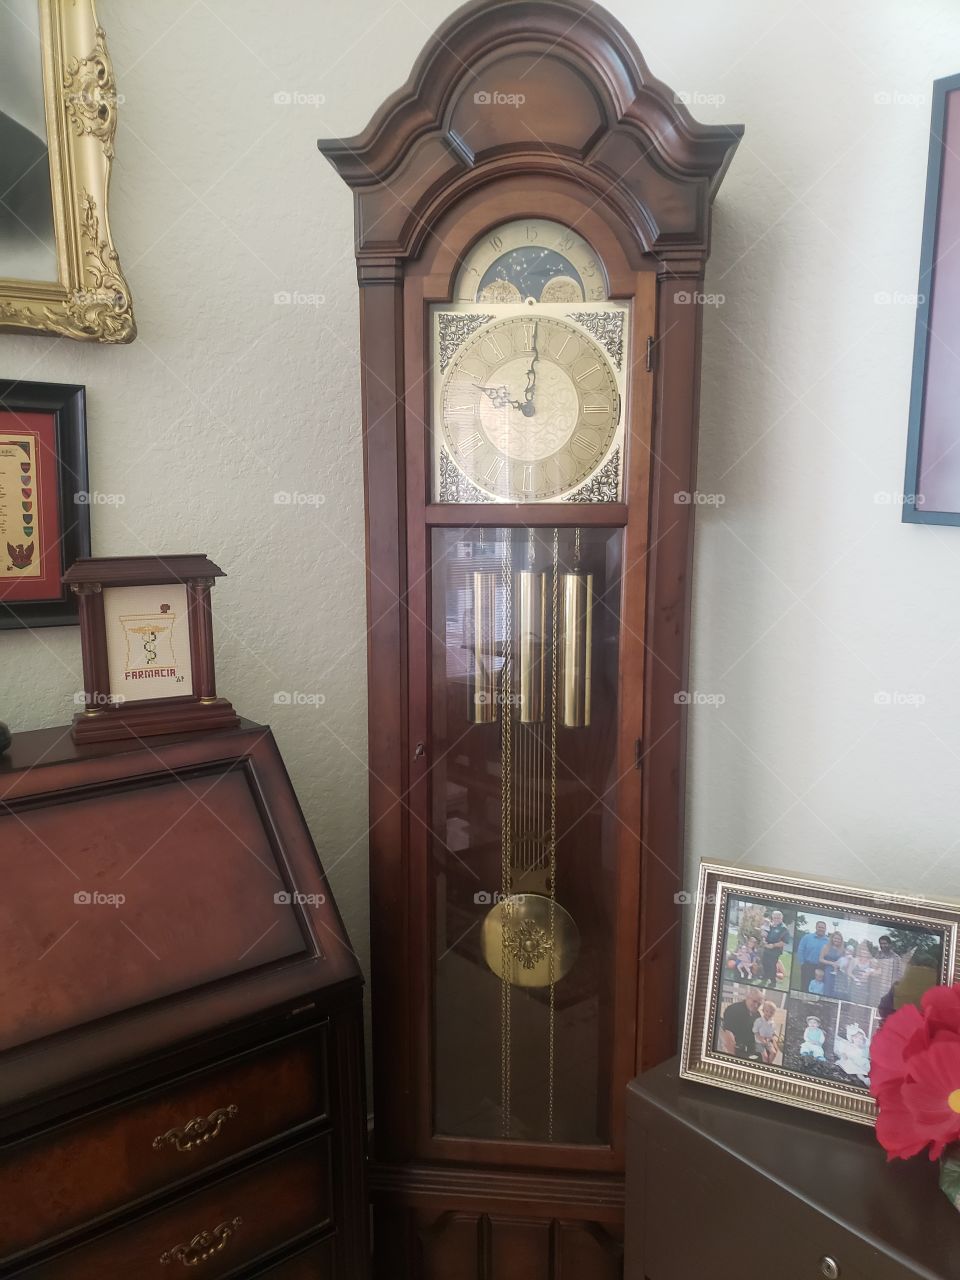 Grandfather clocks